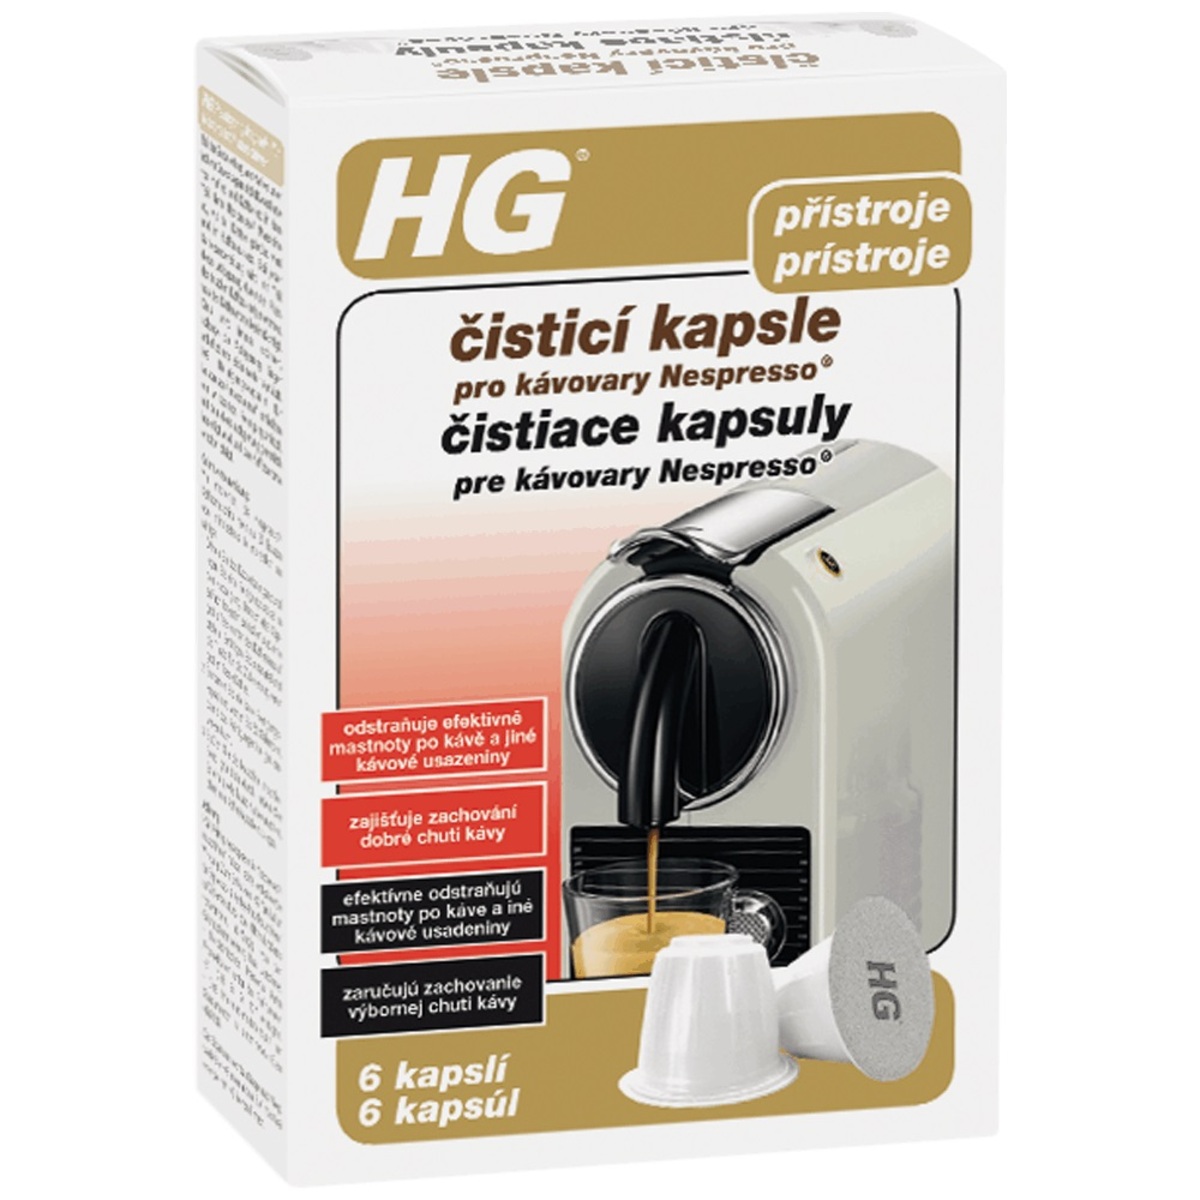 HG čisticí kapsle pro kávovary Nespresso® HGKPKN HG